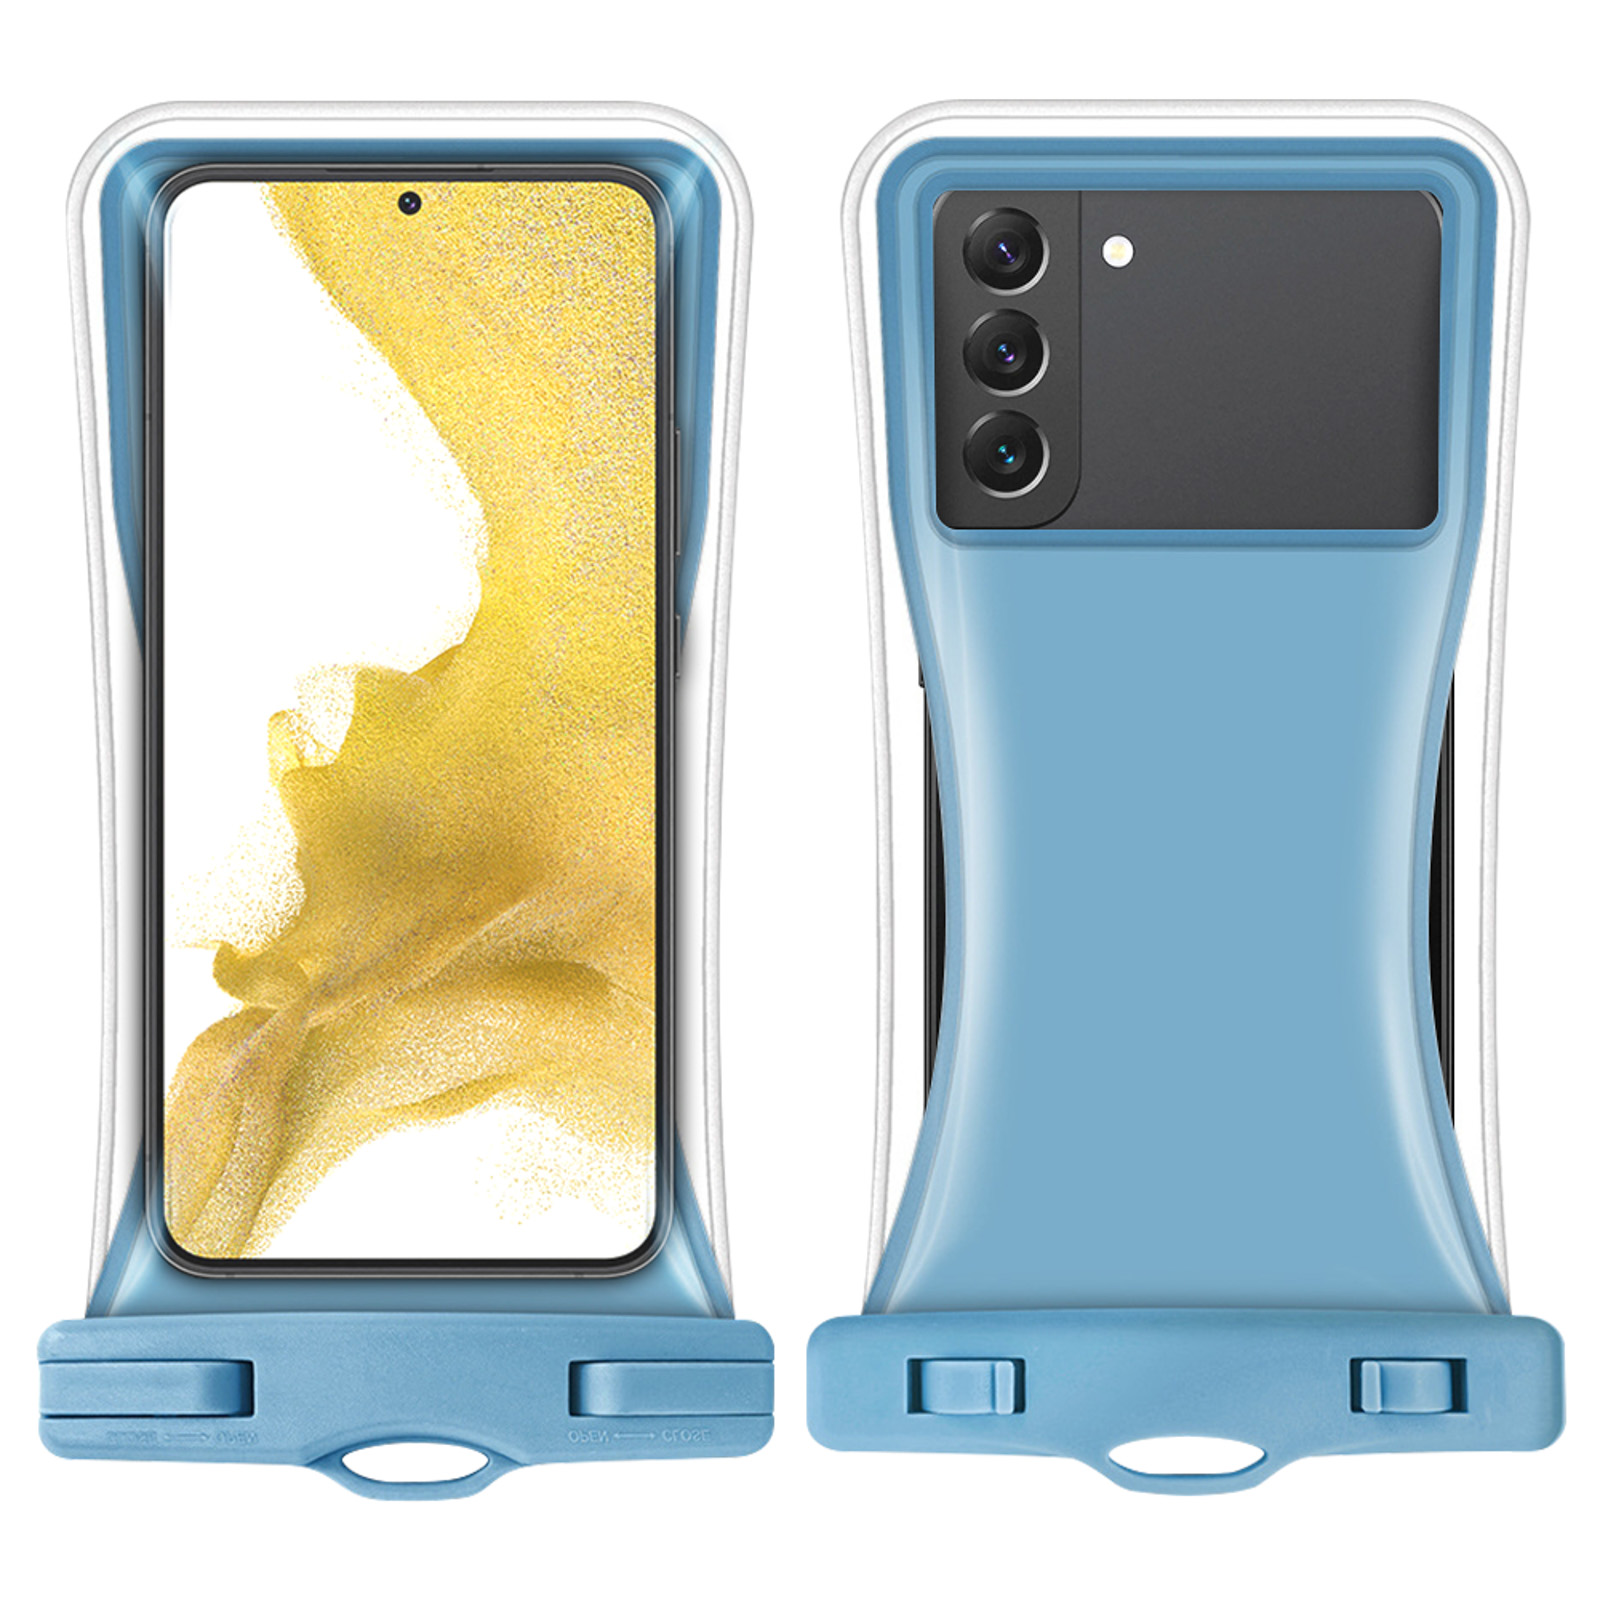 Pochette étanche waterproof pour smartphone avec capacité tactile PhoneLook  - Bleu - Acheter sur PhoneLook